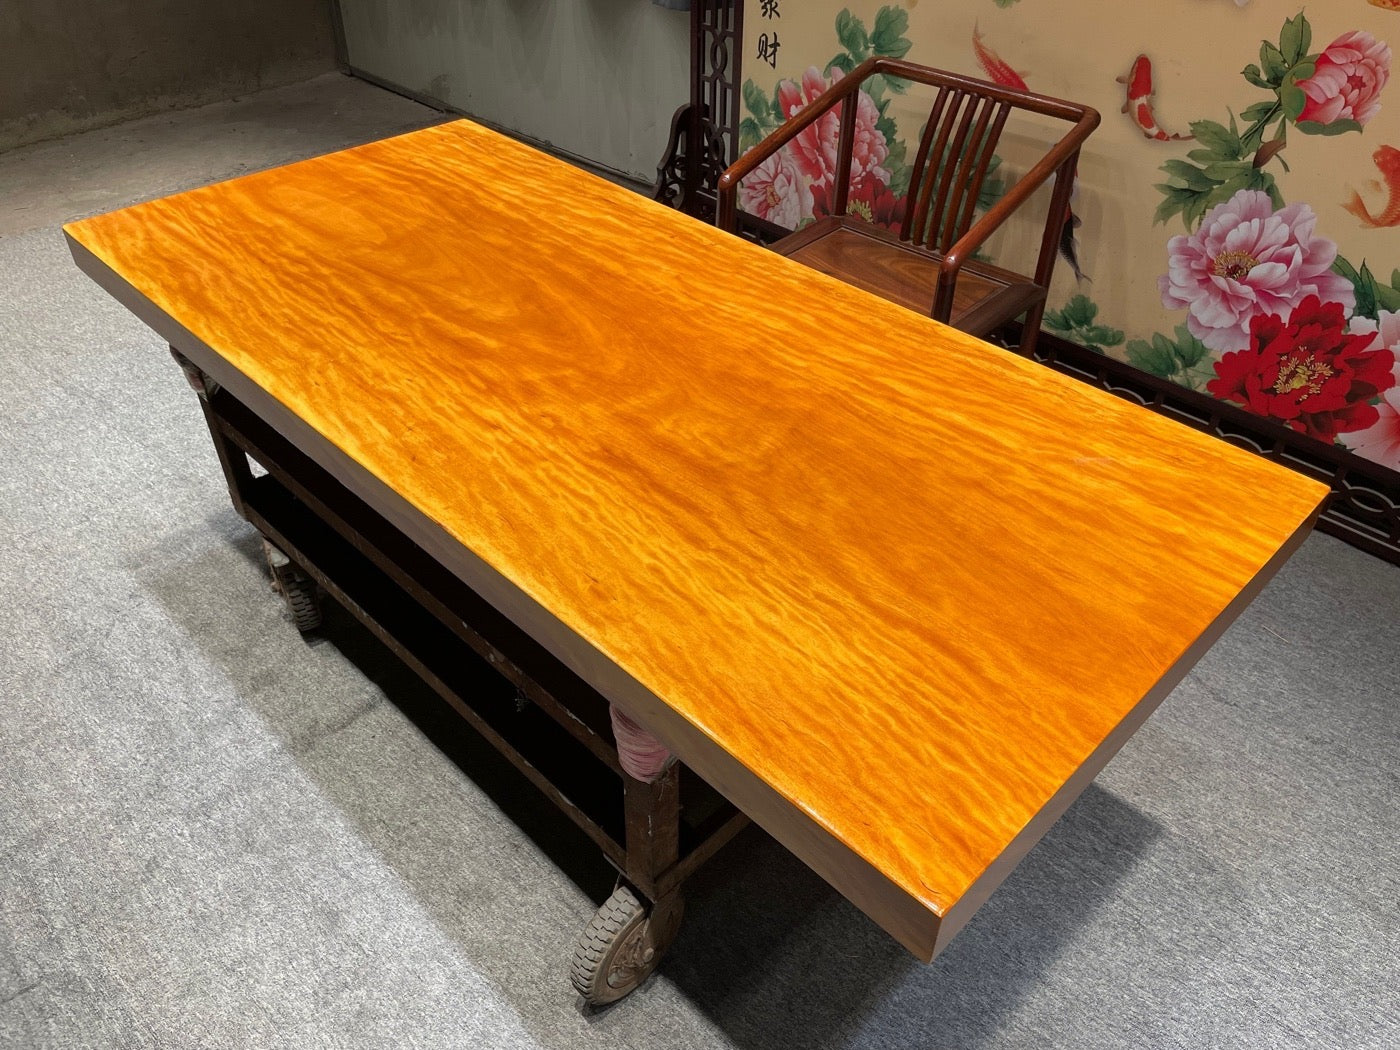 مكتب خشبي طبيعي مخصص لتناول الطعام، طاولة باللون البرتقالي